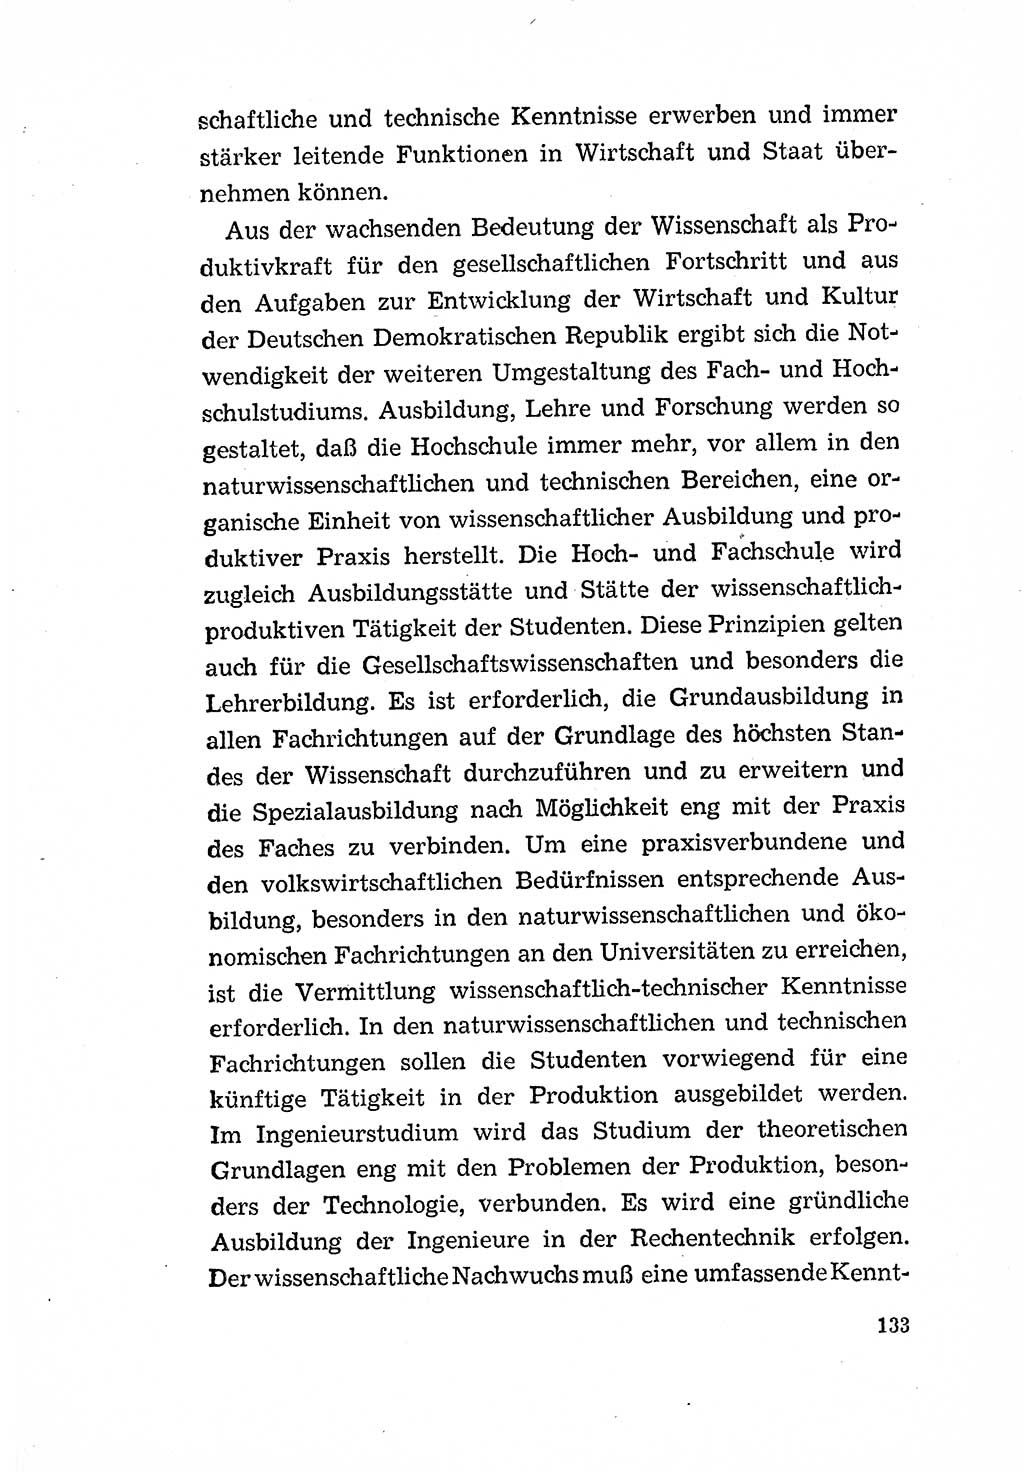 Programm der Sozialistischen Einheitspartei Deutschlands (SED) [Deutsche Demokratische Republik (DDR)] 1963, Seite 133 (Progr. SED DDR 1963, S. 133)